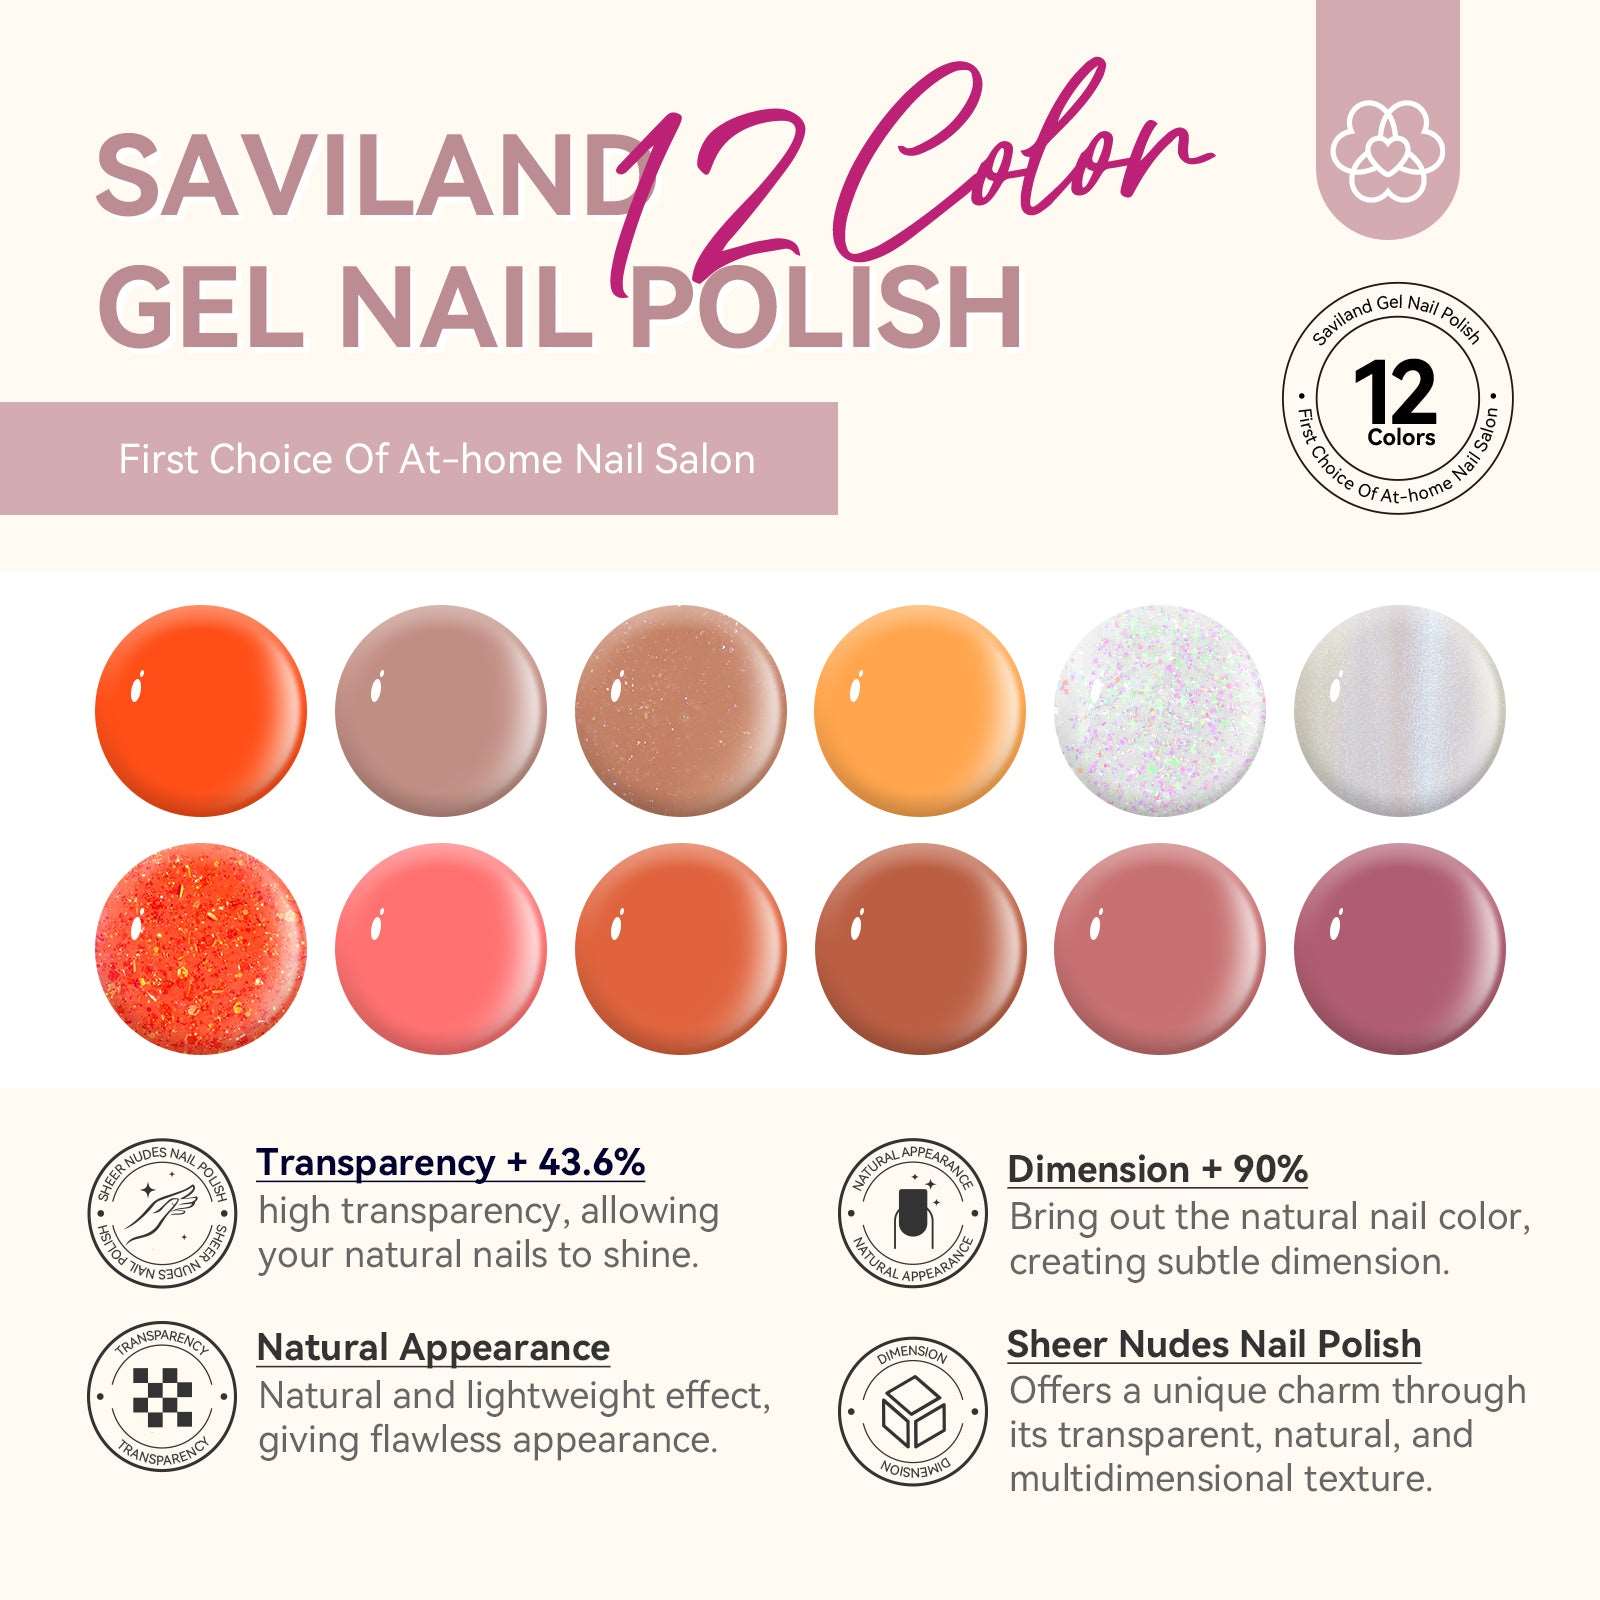 Nail Polish Set - 12 Colors Translucent Nudes Pink Clear Nail Polish With Base and Top Polish Coat